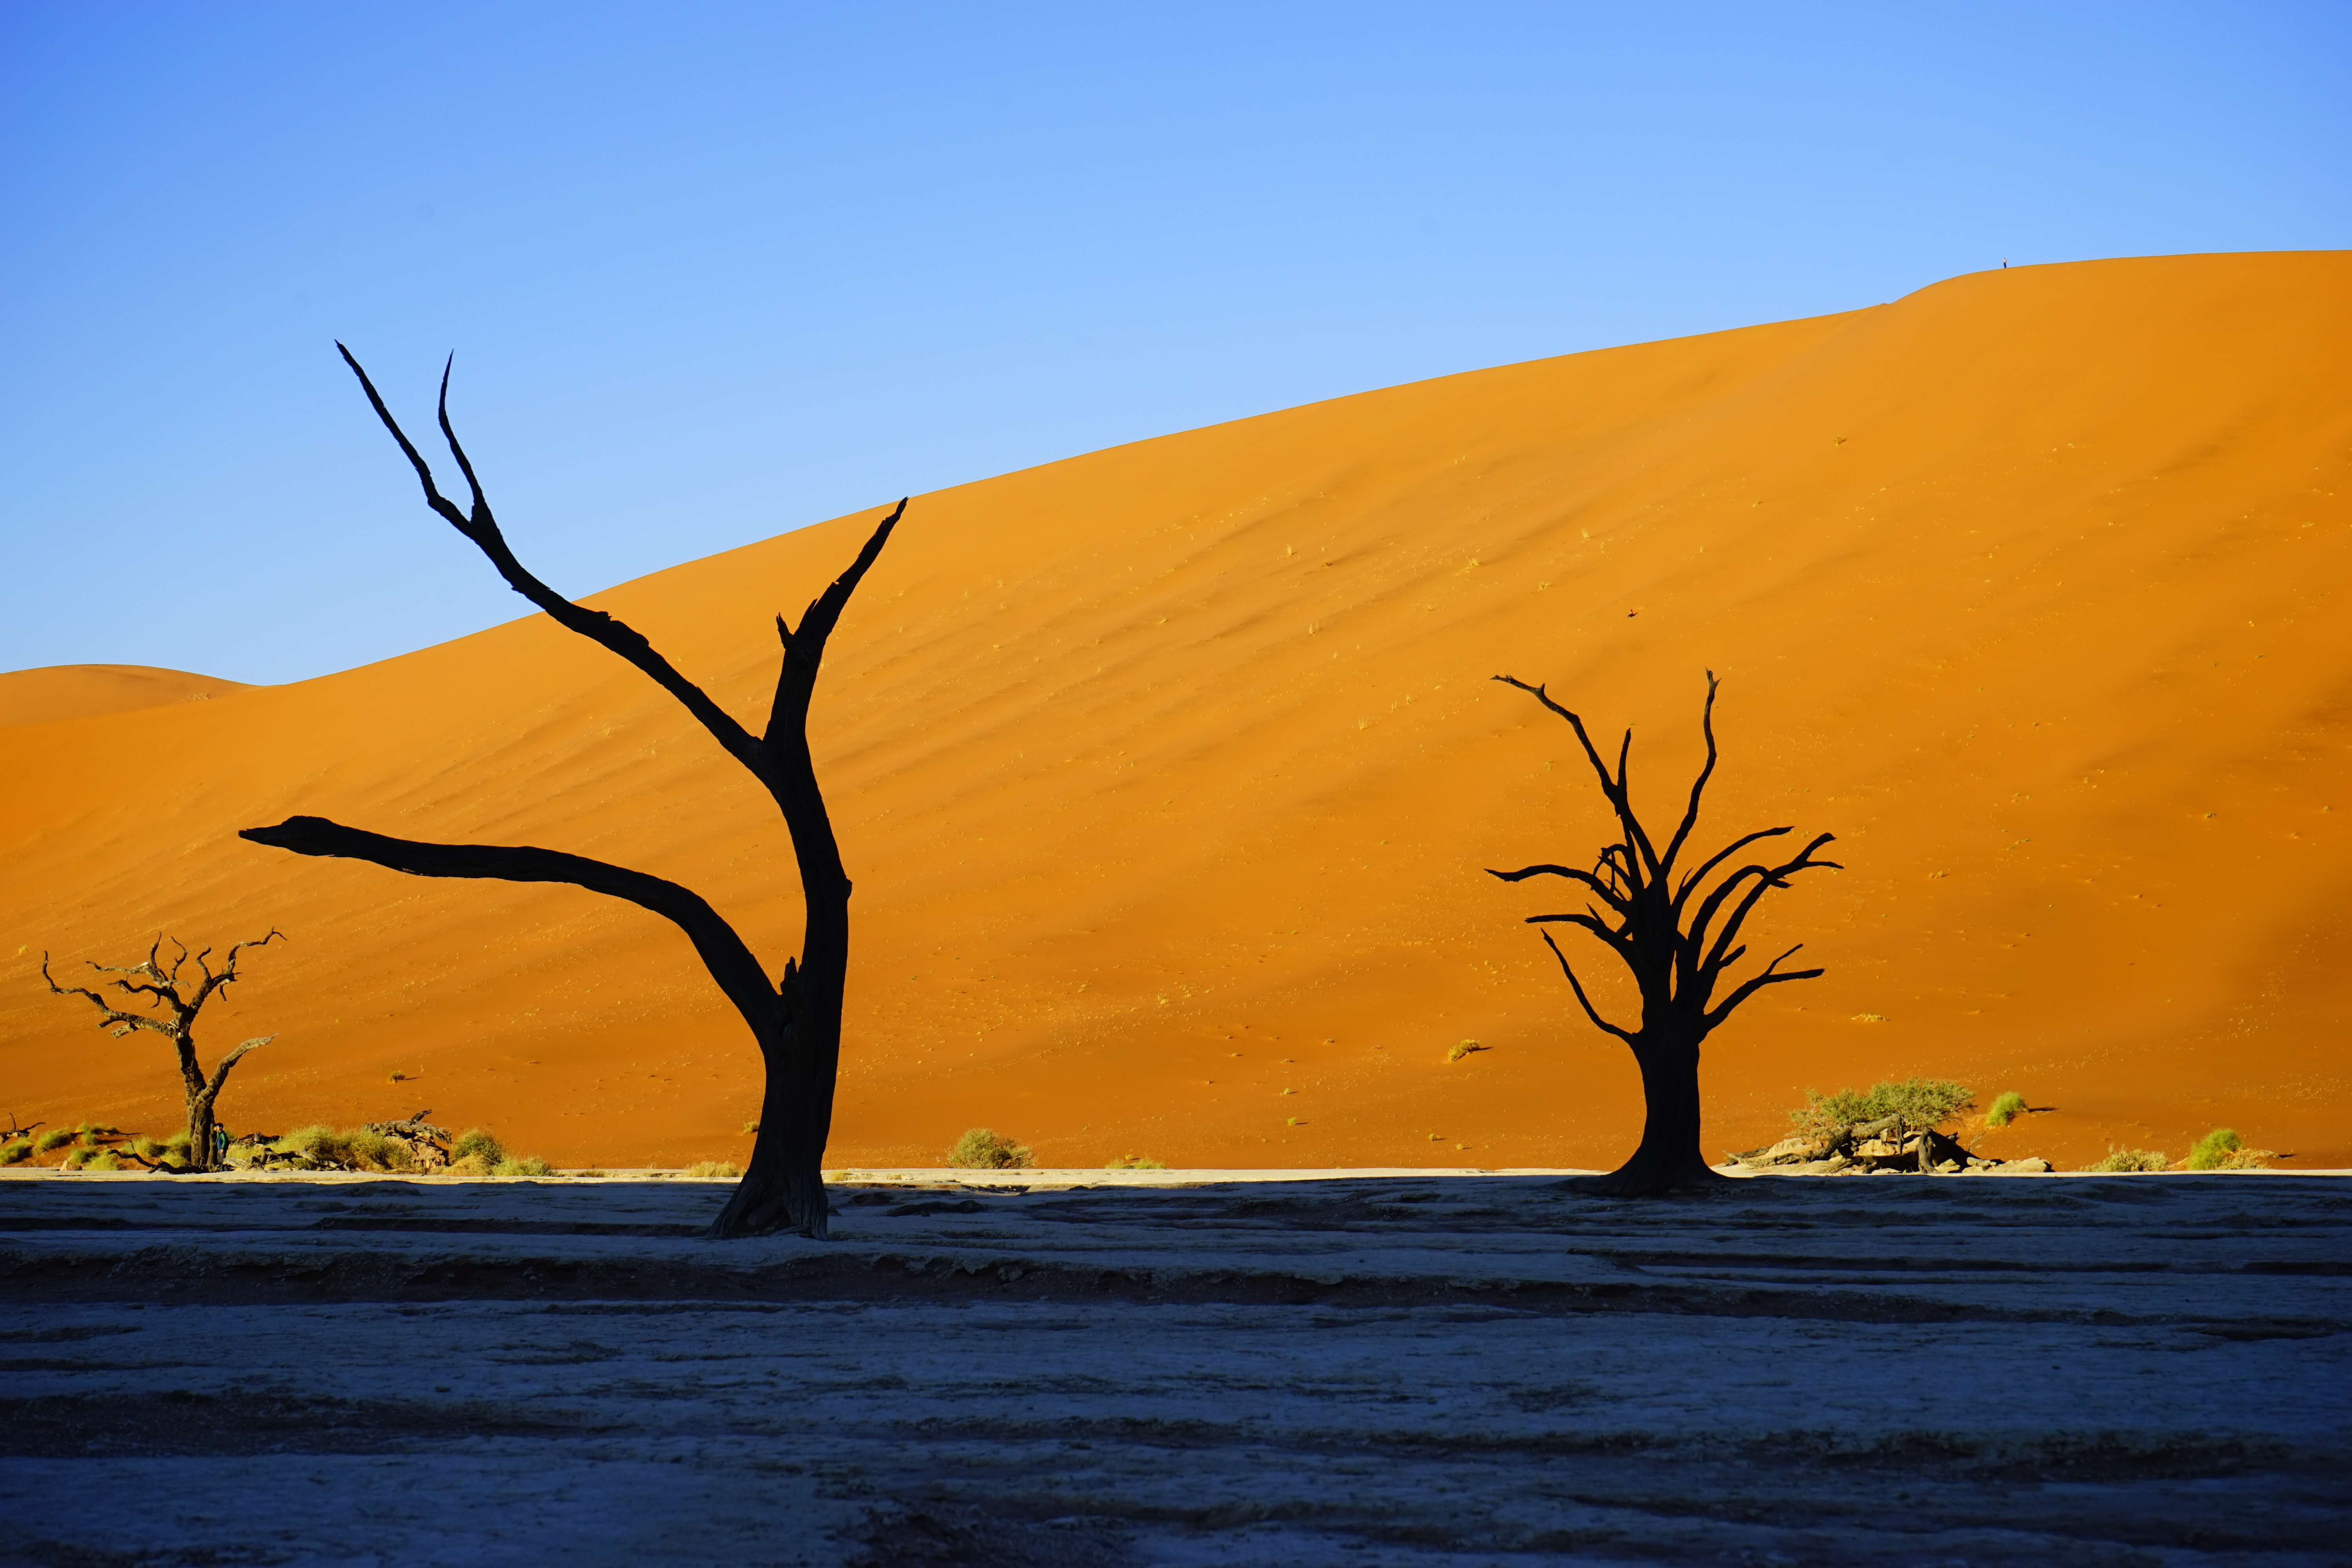 DSC3773 - 【ナミビア ナミブ砂漠】ナミブ砂漠の美しい赤。その成り立ちについて。